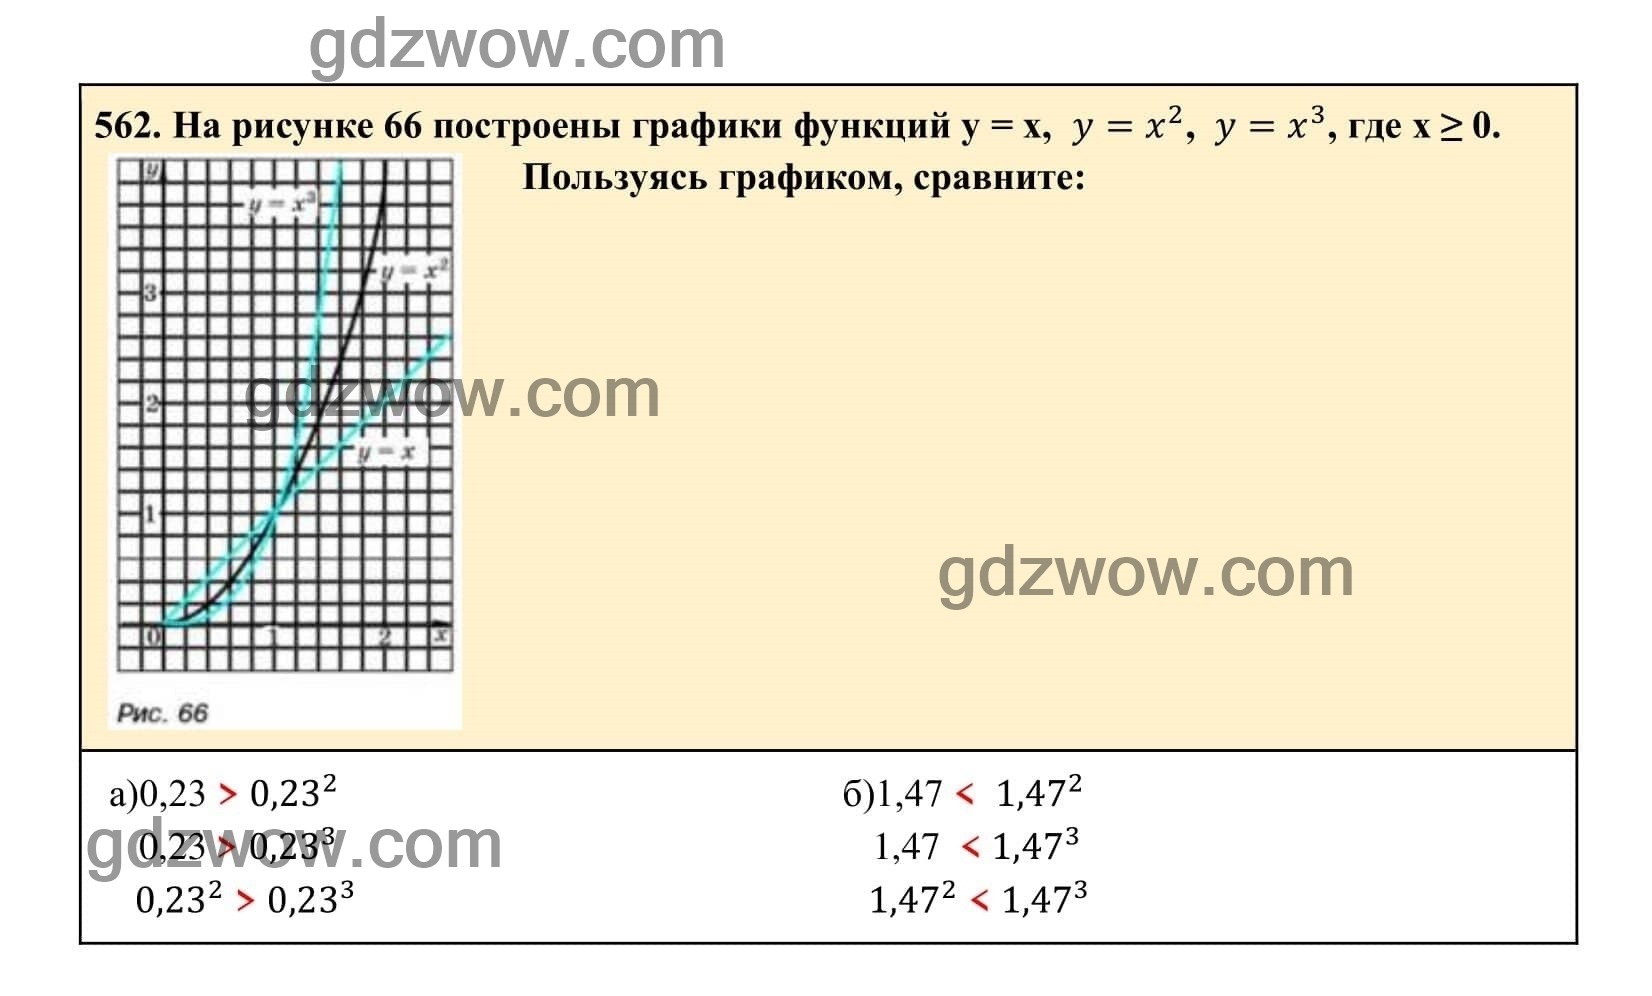 Упражнение 562 - ГДЗ по Алгебре 7 класс Учебник Макарычев (решебник) - GDZwow